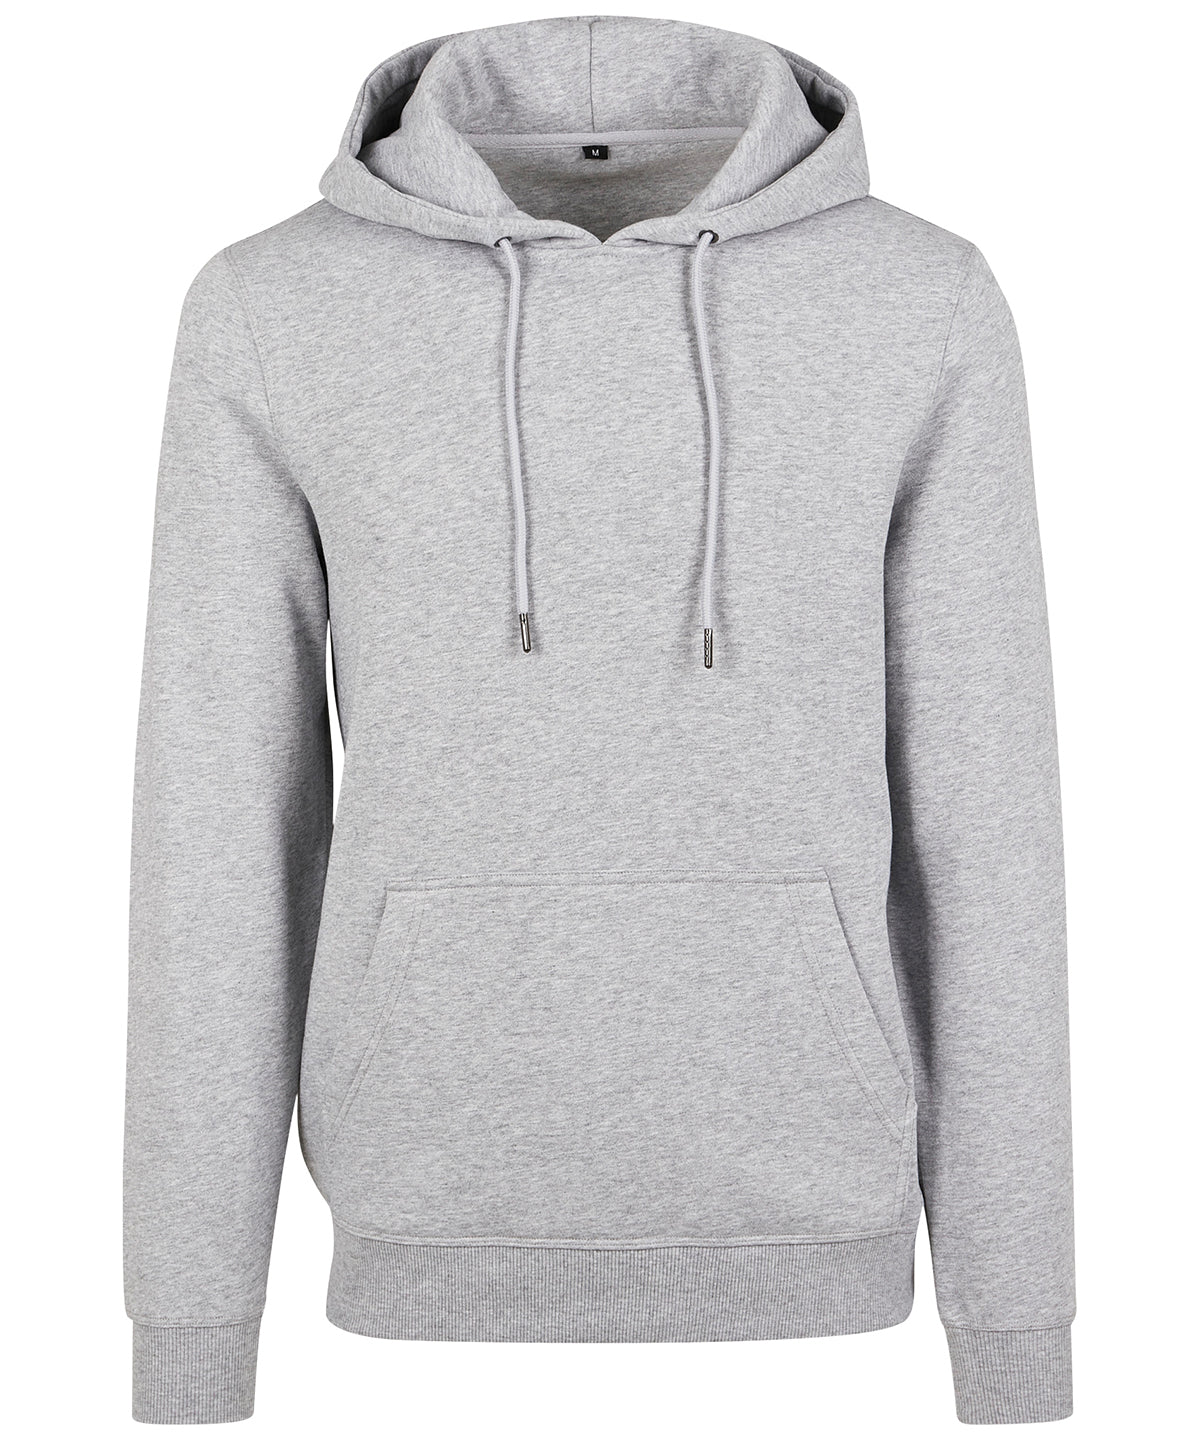 Personalised Hoodies - Black Build Your Brand Premium hoodie